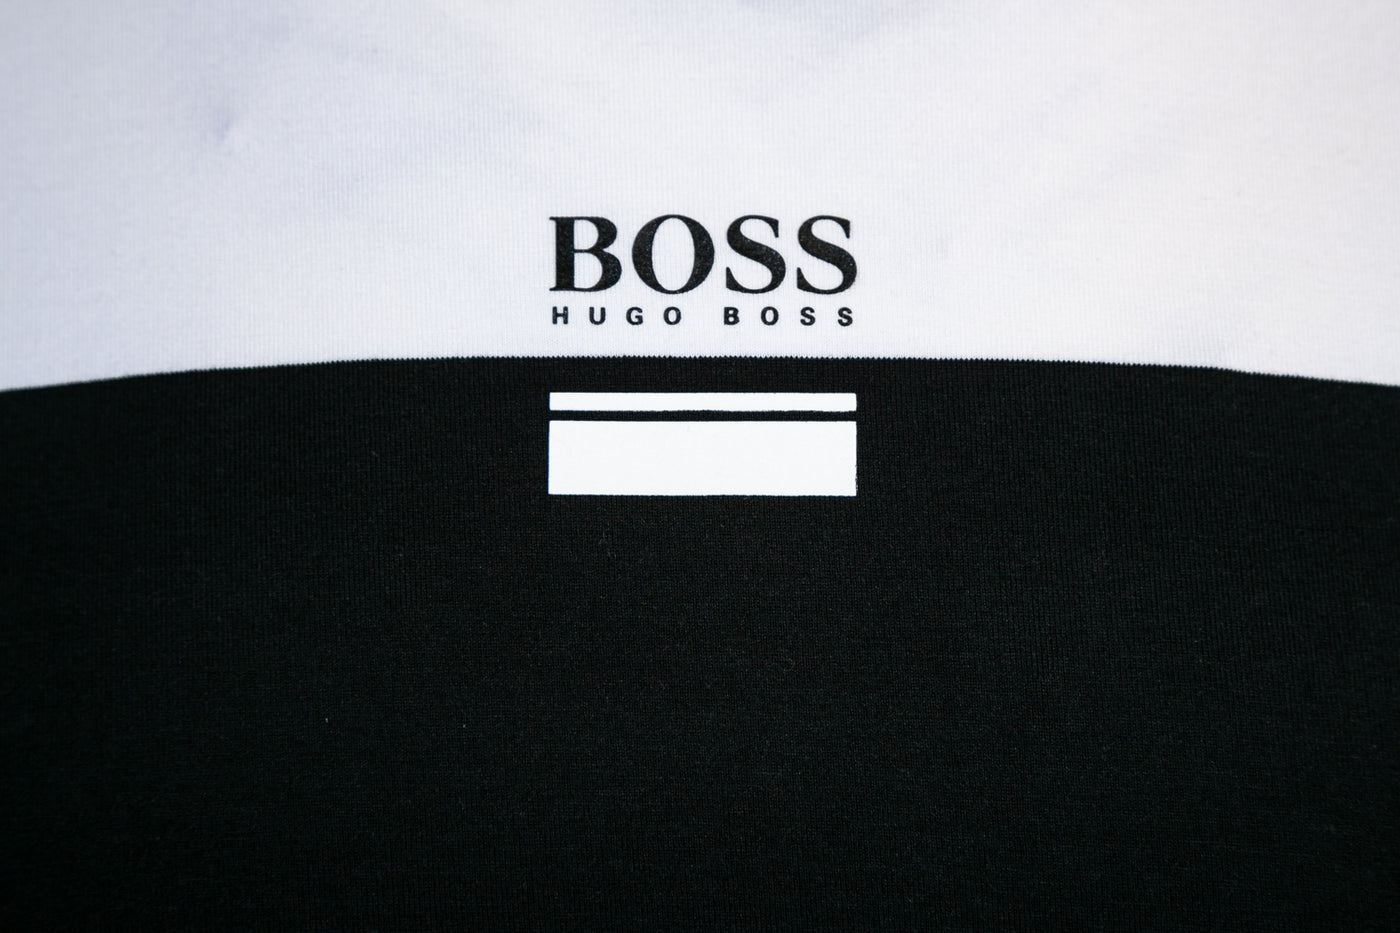 BOSS Tee 6 T Shirt in Black & White